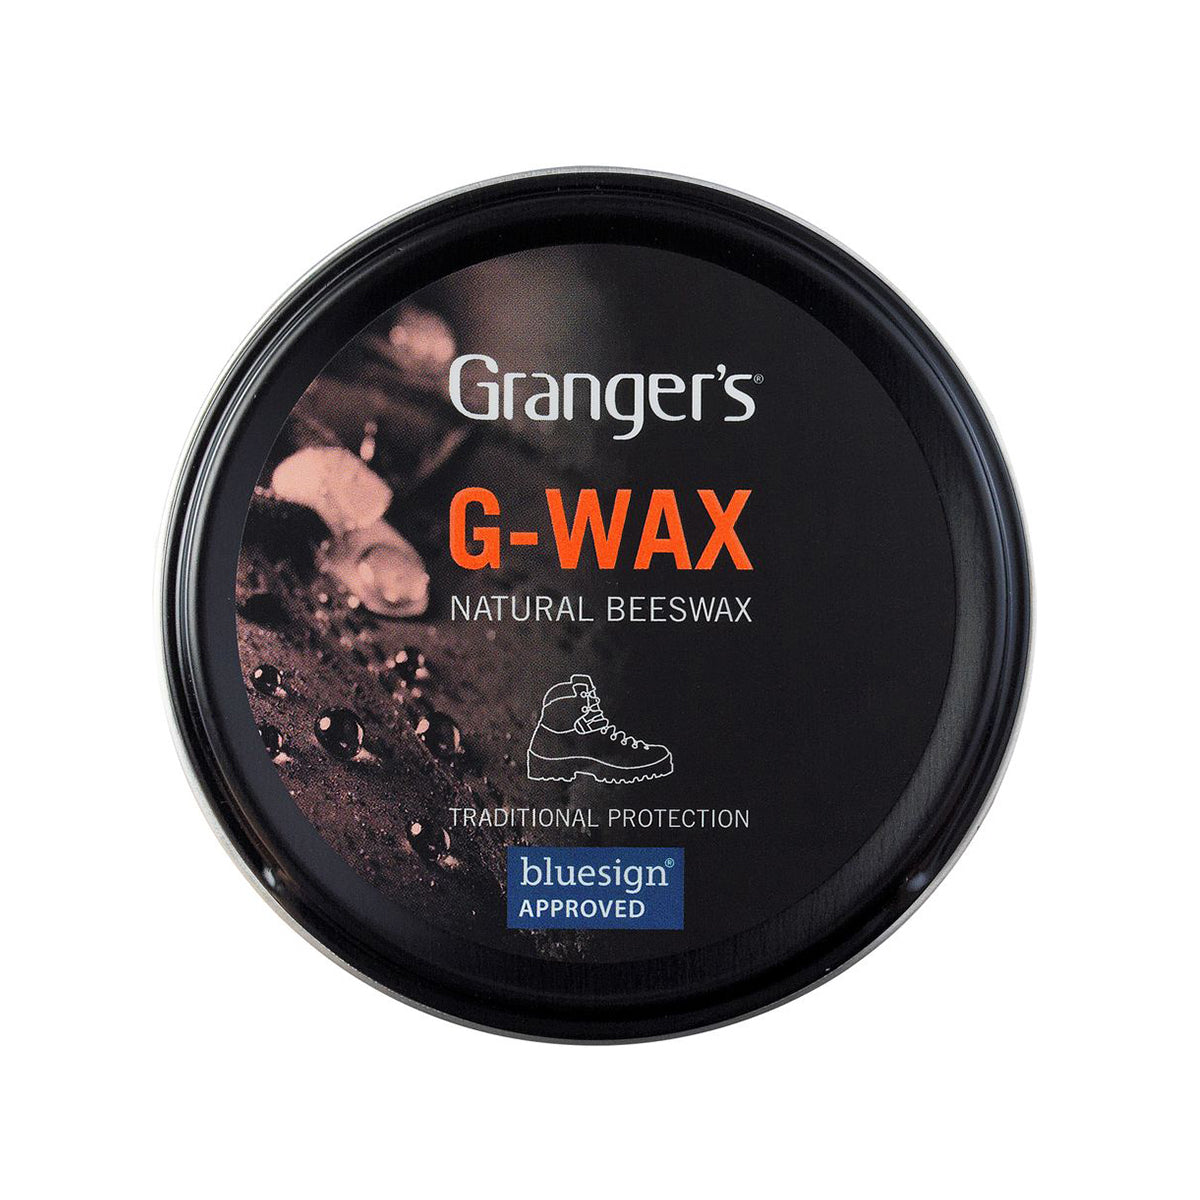 Grangers G-Wax in Grangers G-Wax by Grangers | Footwear - goHUNT Shop by GOHUNT | Grangers - GOHUNT Shop